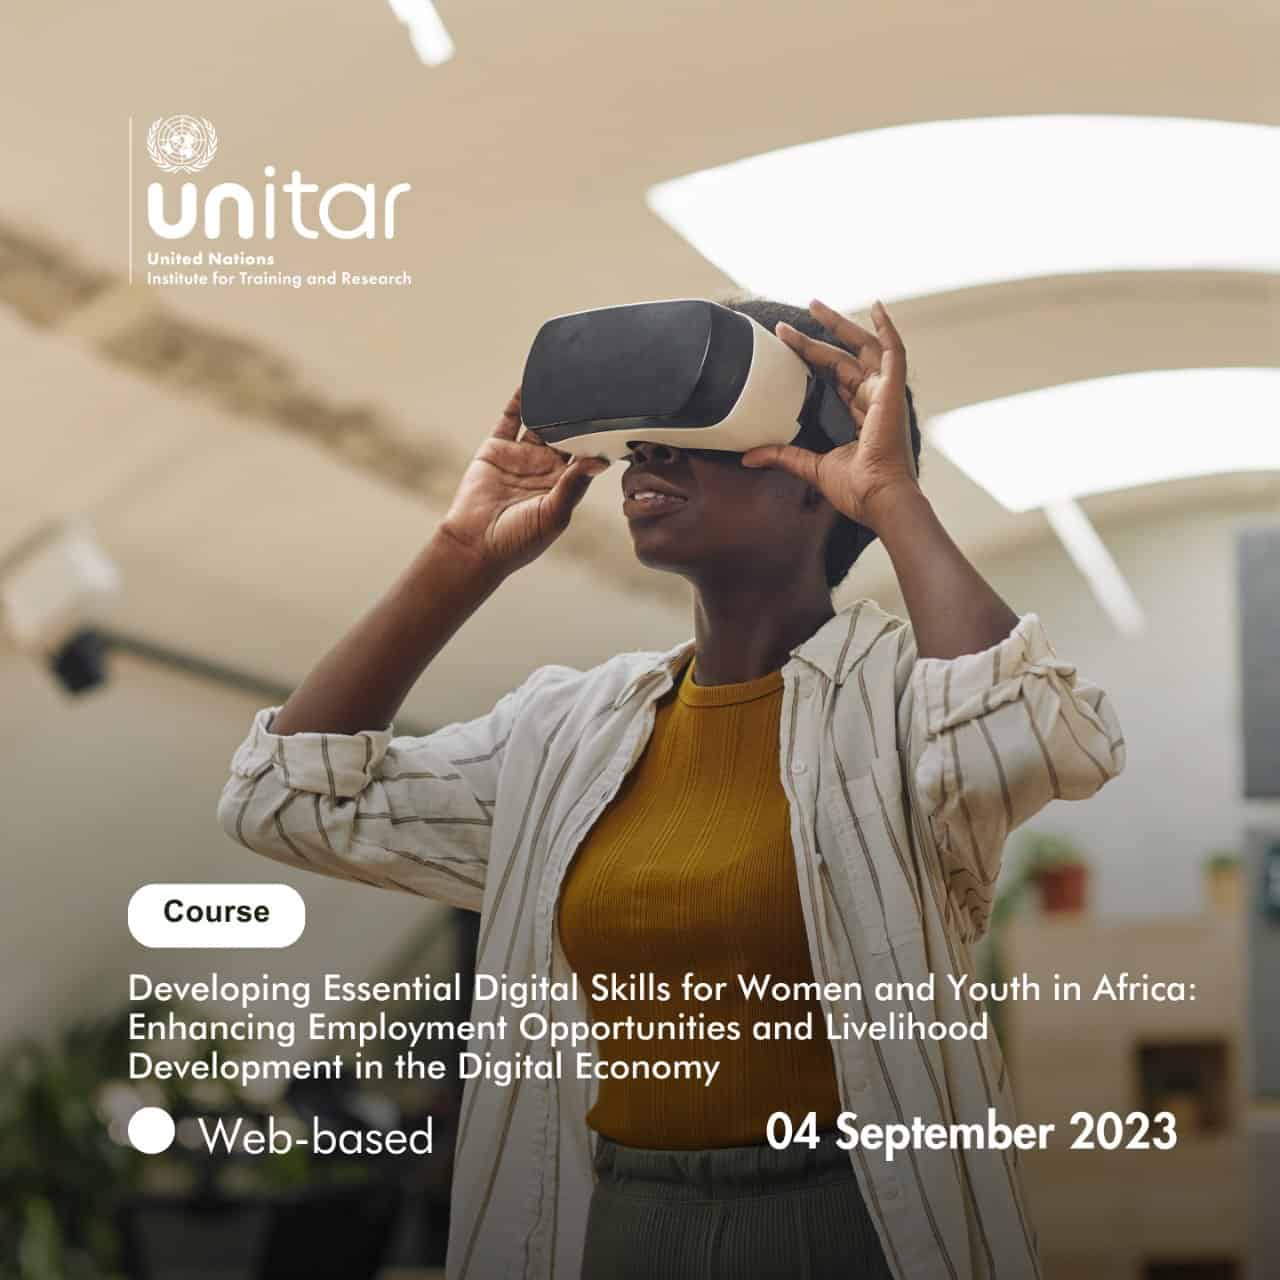 UNITAR 2023: Digital Skills Training for Women & Youth in Africa